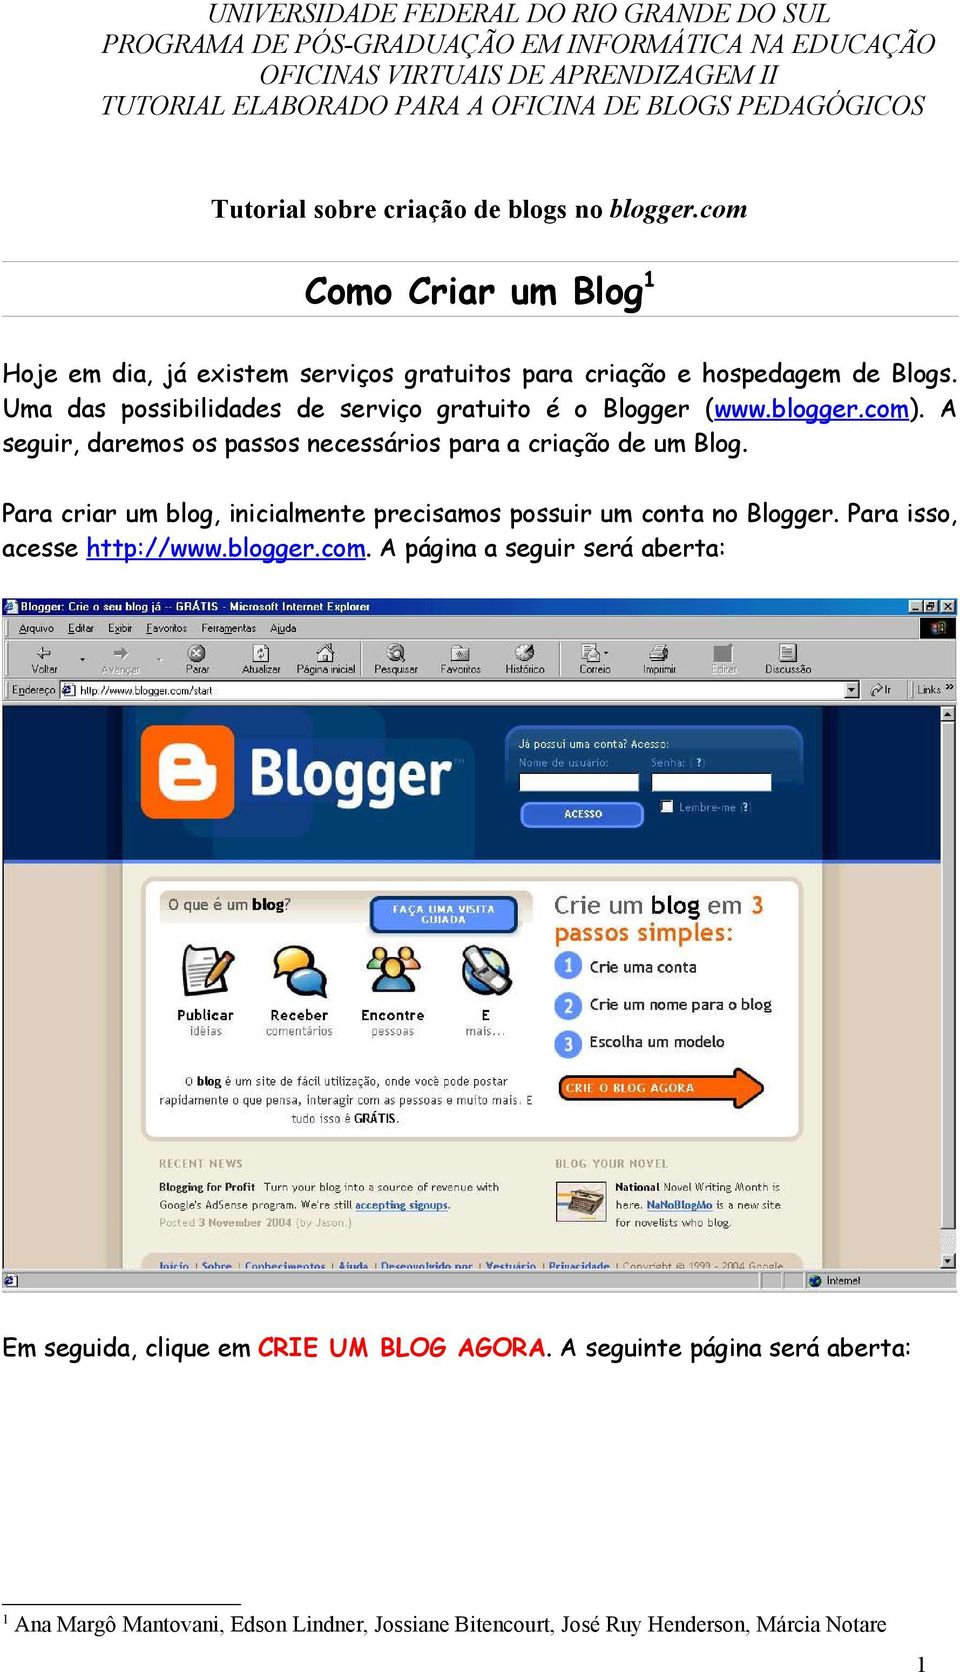 blogger.com). A seguir, daremos os passos necessários para a criação de um Blog. Para criar um blog, inicialmente precisamos possuir um conta no Blogger. Para isso, acesse http://www.blogger.com. A página a seguir será aberta: Em seguida, clique em CRIE UM BLOG AGORA.